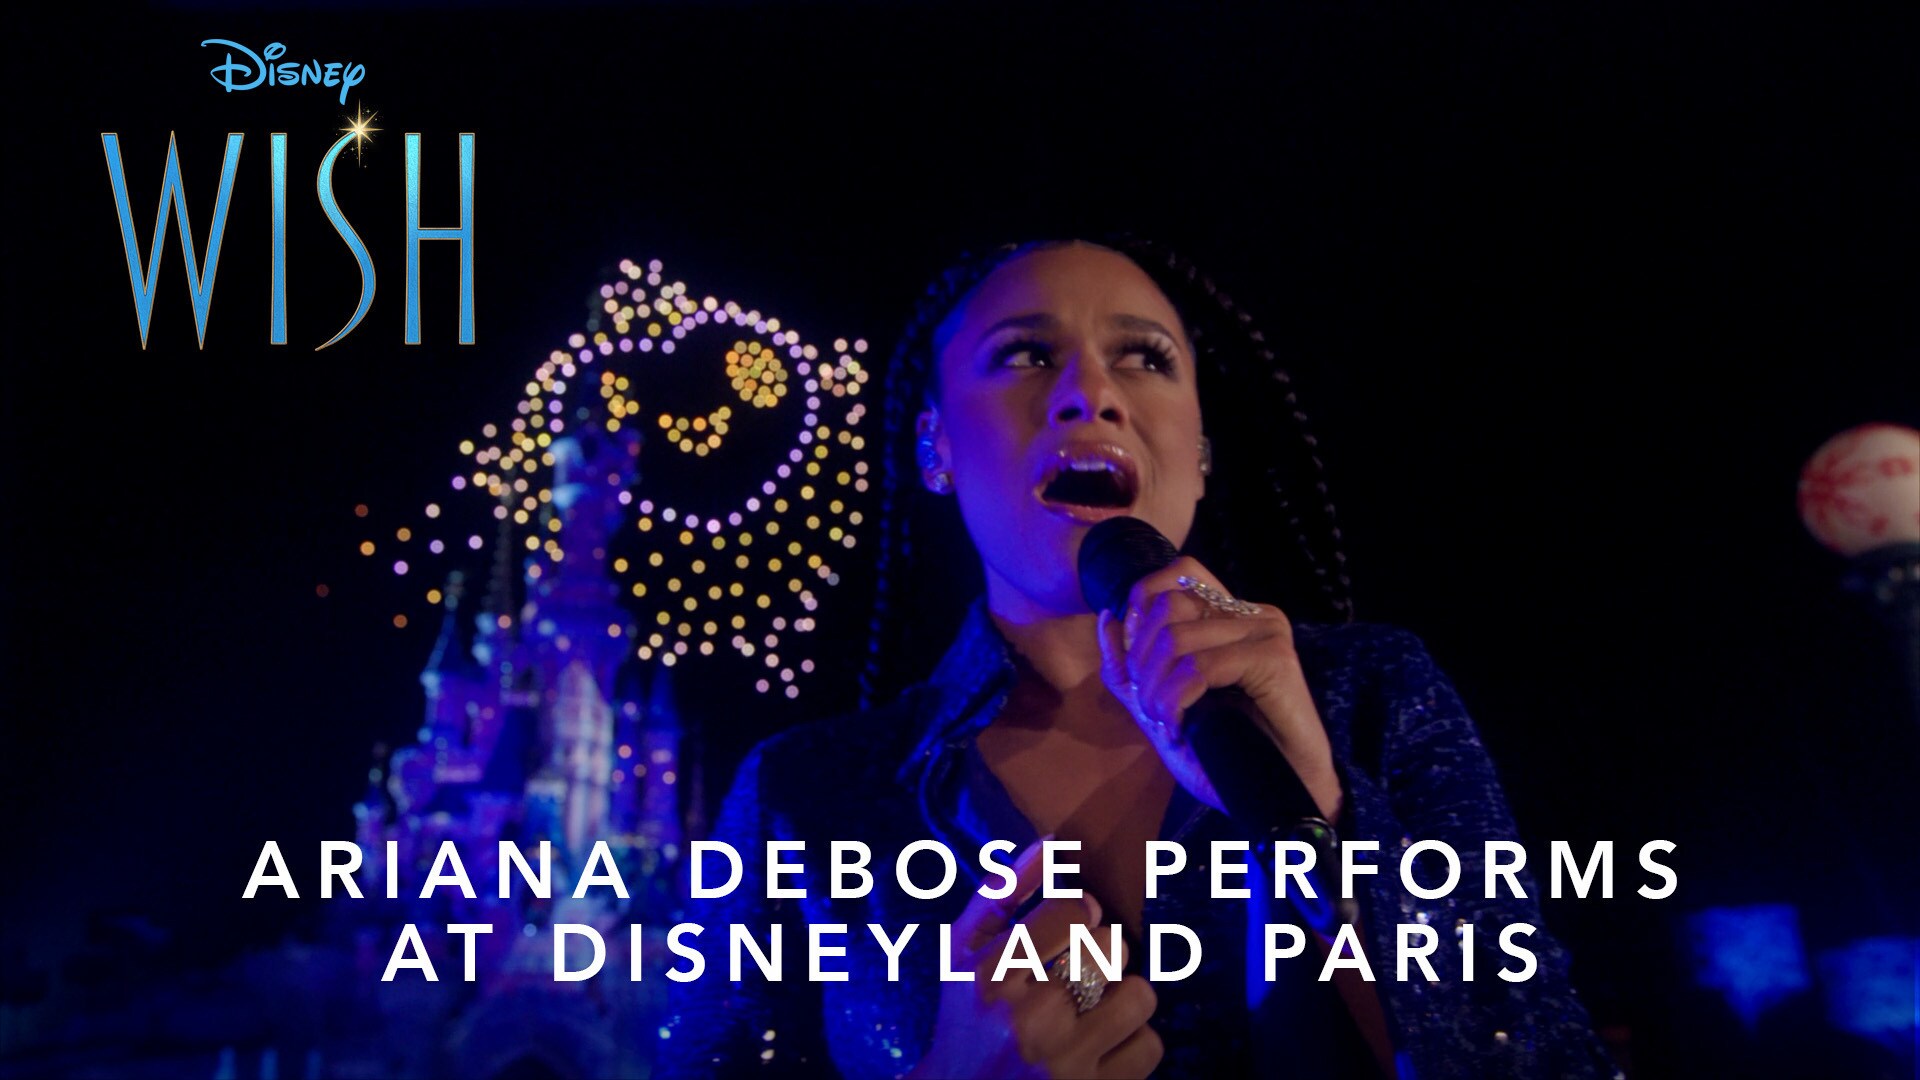 Wish | Ariana DeBose Performs "This Wish" at Disneyland Paris